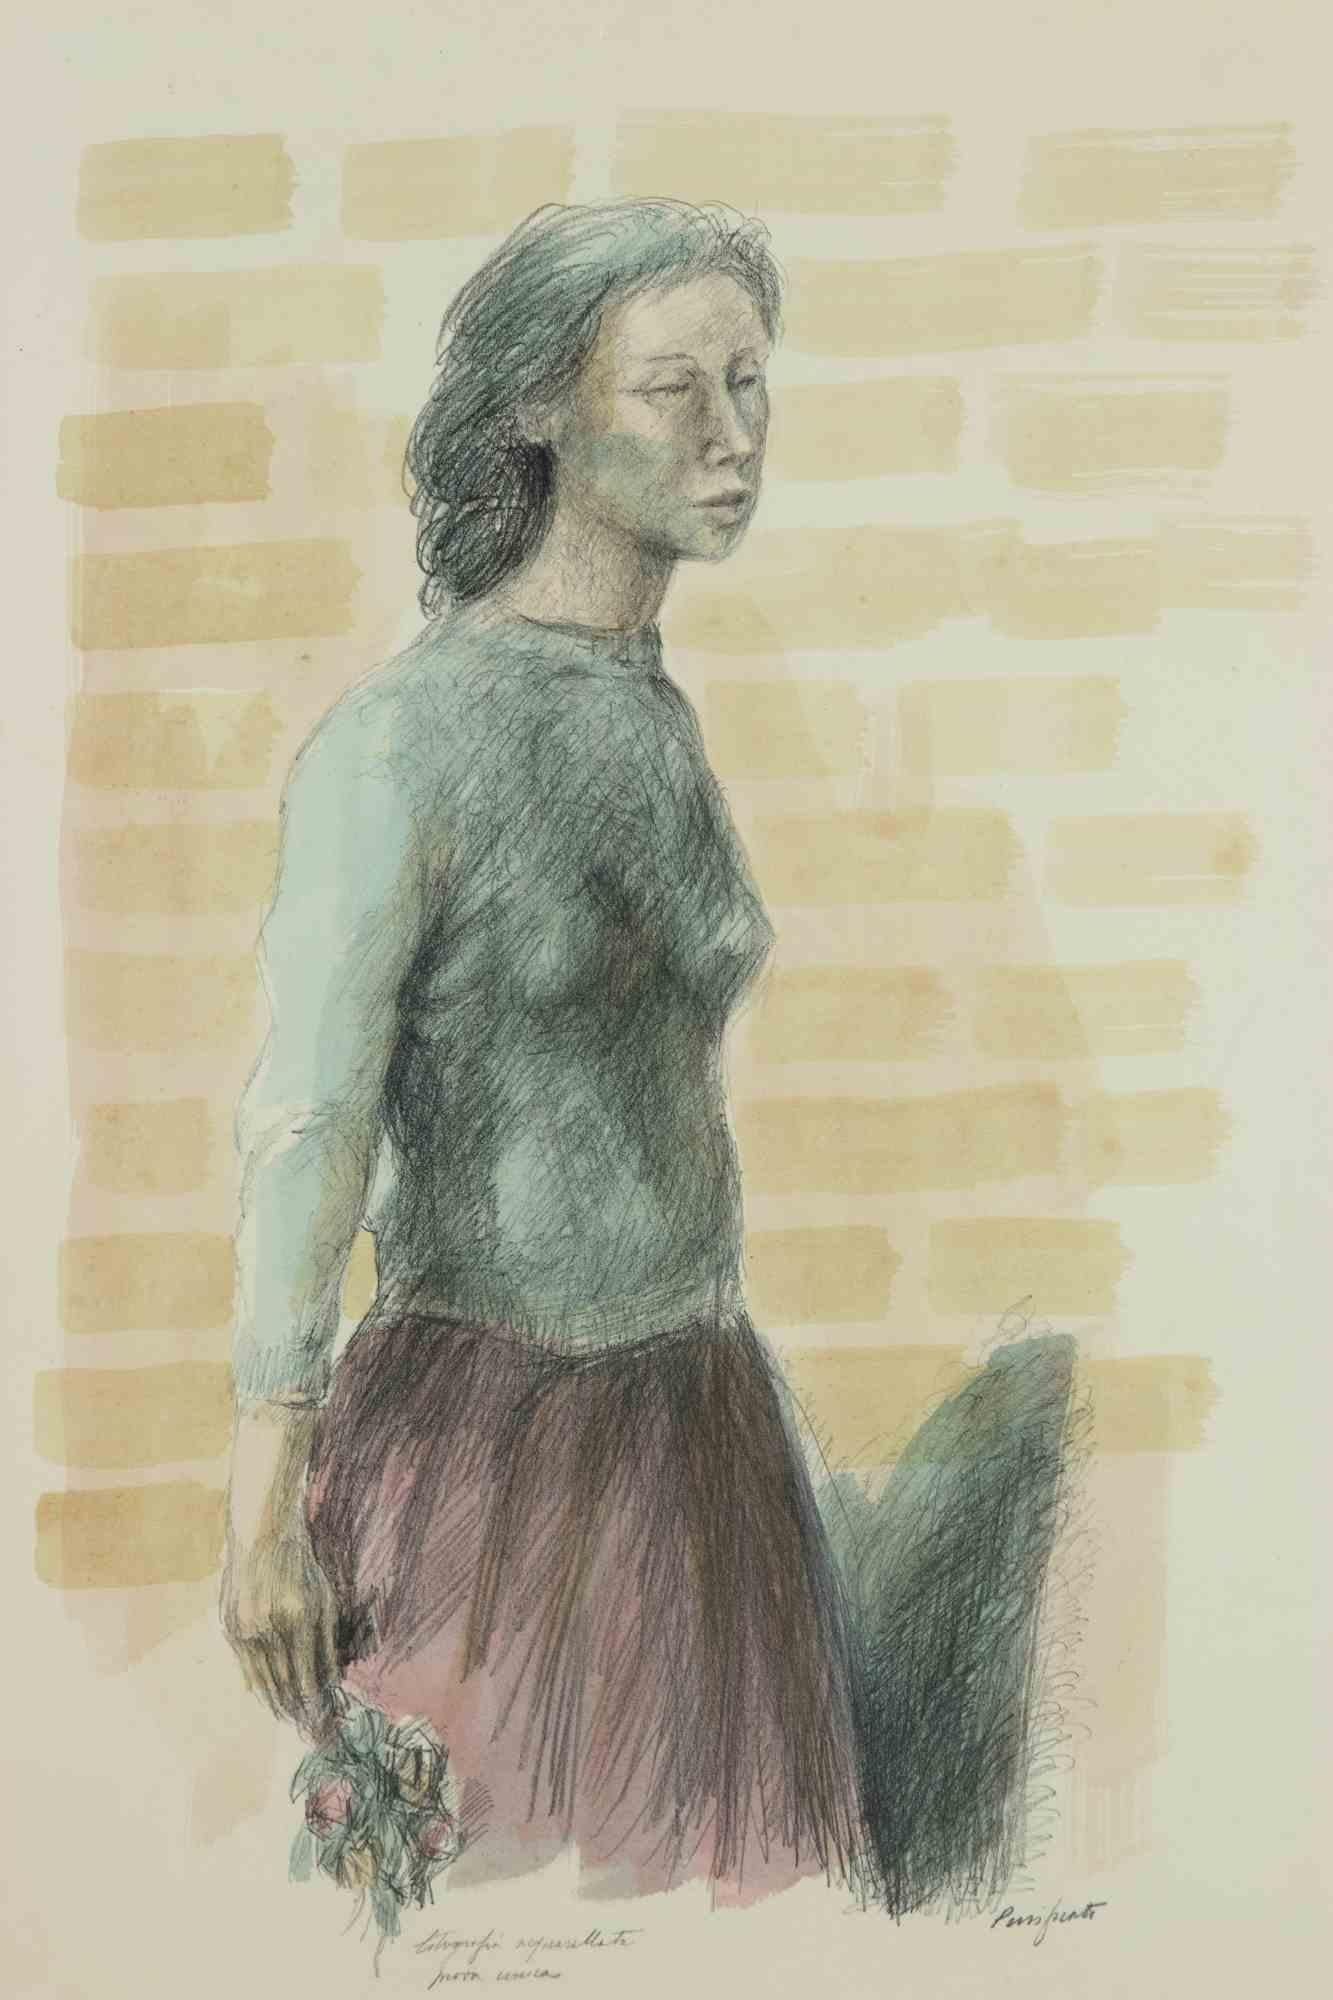 Die weibliche Figur ist ein originelles modernes Kunstwerk von Domenico Purificato.

Von Hand aquarellierte Monotypie-Lithografie.

Vom Künstler handsigniert. Einzigartiges Exemplar.

Inklusive Rahmen: 84,5 x 63,5 cm